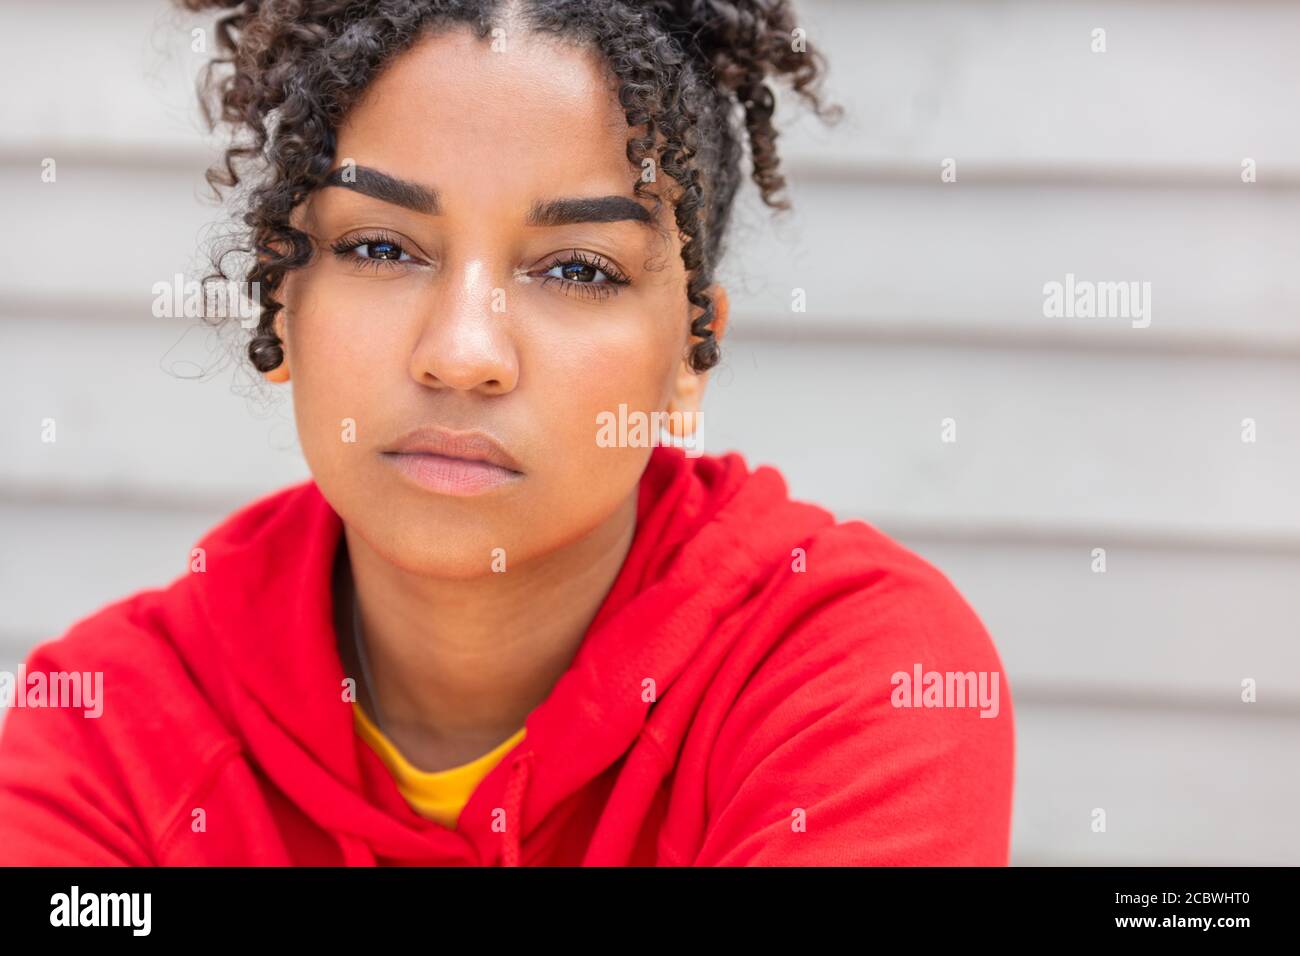 Ragazza adolescente teen femmina giovane Africano americano misto razza biracial donna all'esterno che guarda premuroso e indossa una felpa con cappuccio rossa Foto Stock